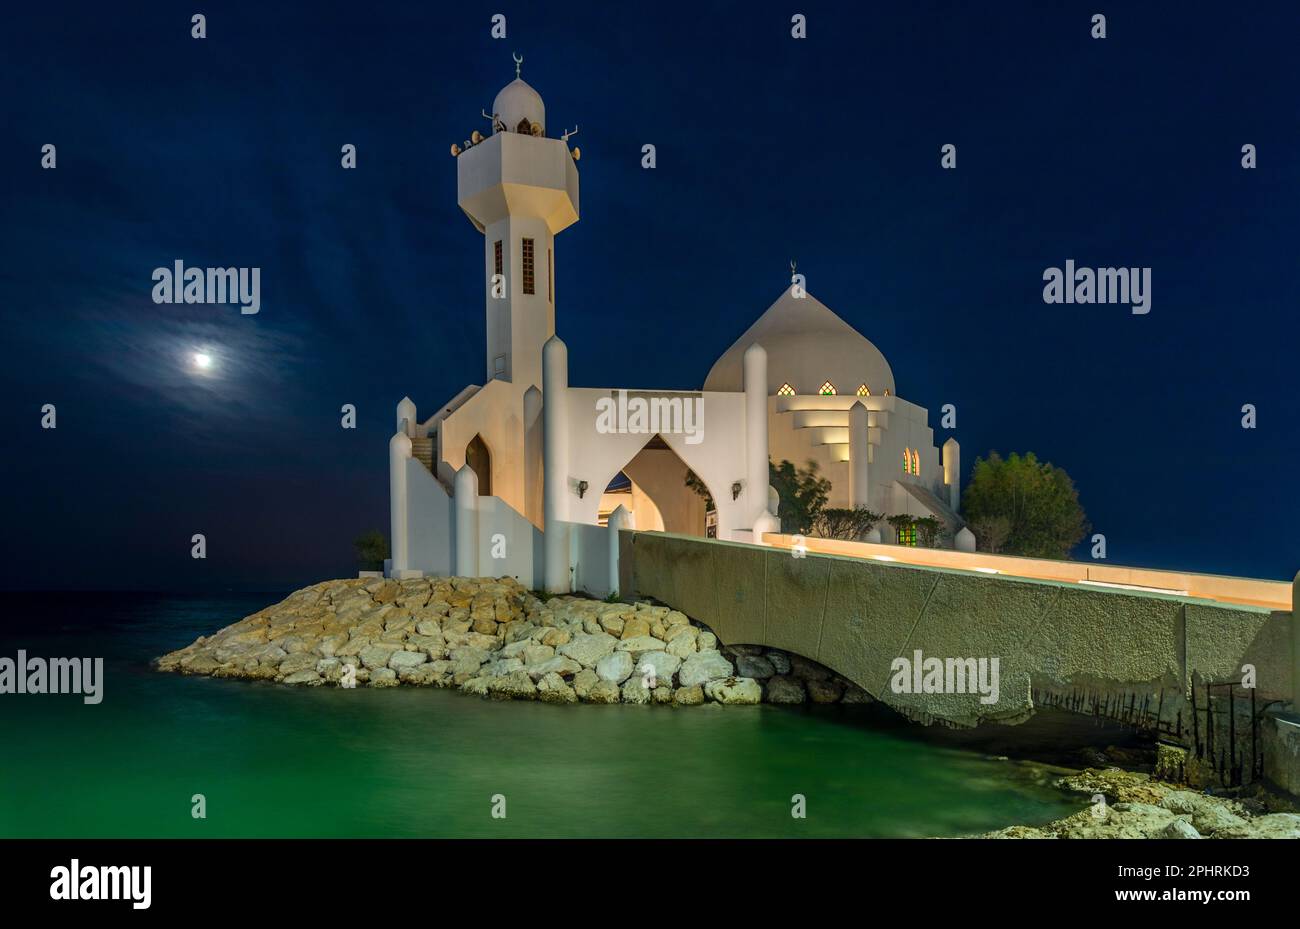 White Salem Bin Laden Moschea costruita sull'isola al chiaro di luna con il mare sullo sfondo, al Khobar, Arabia Saudita Foto Stock